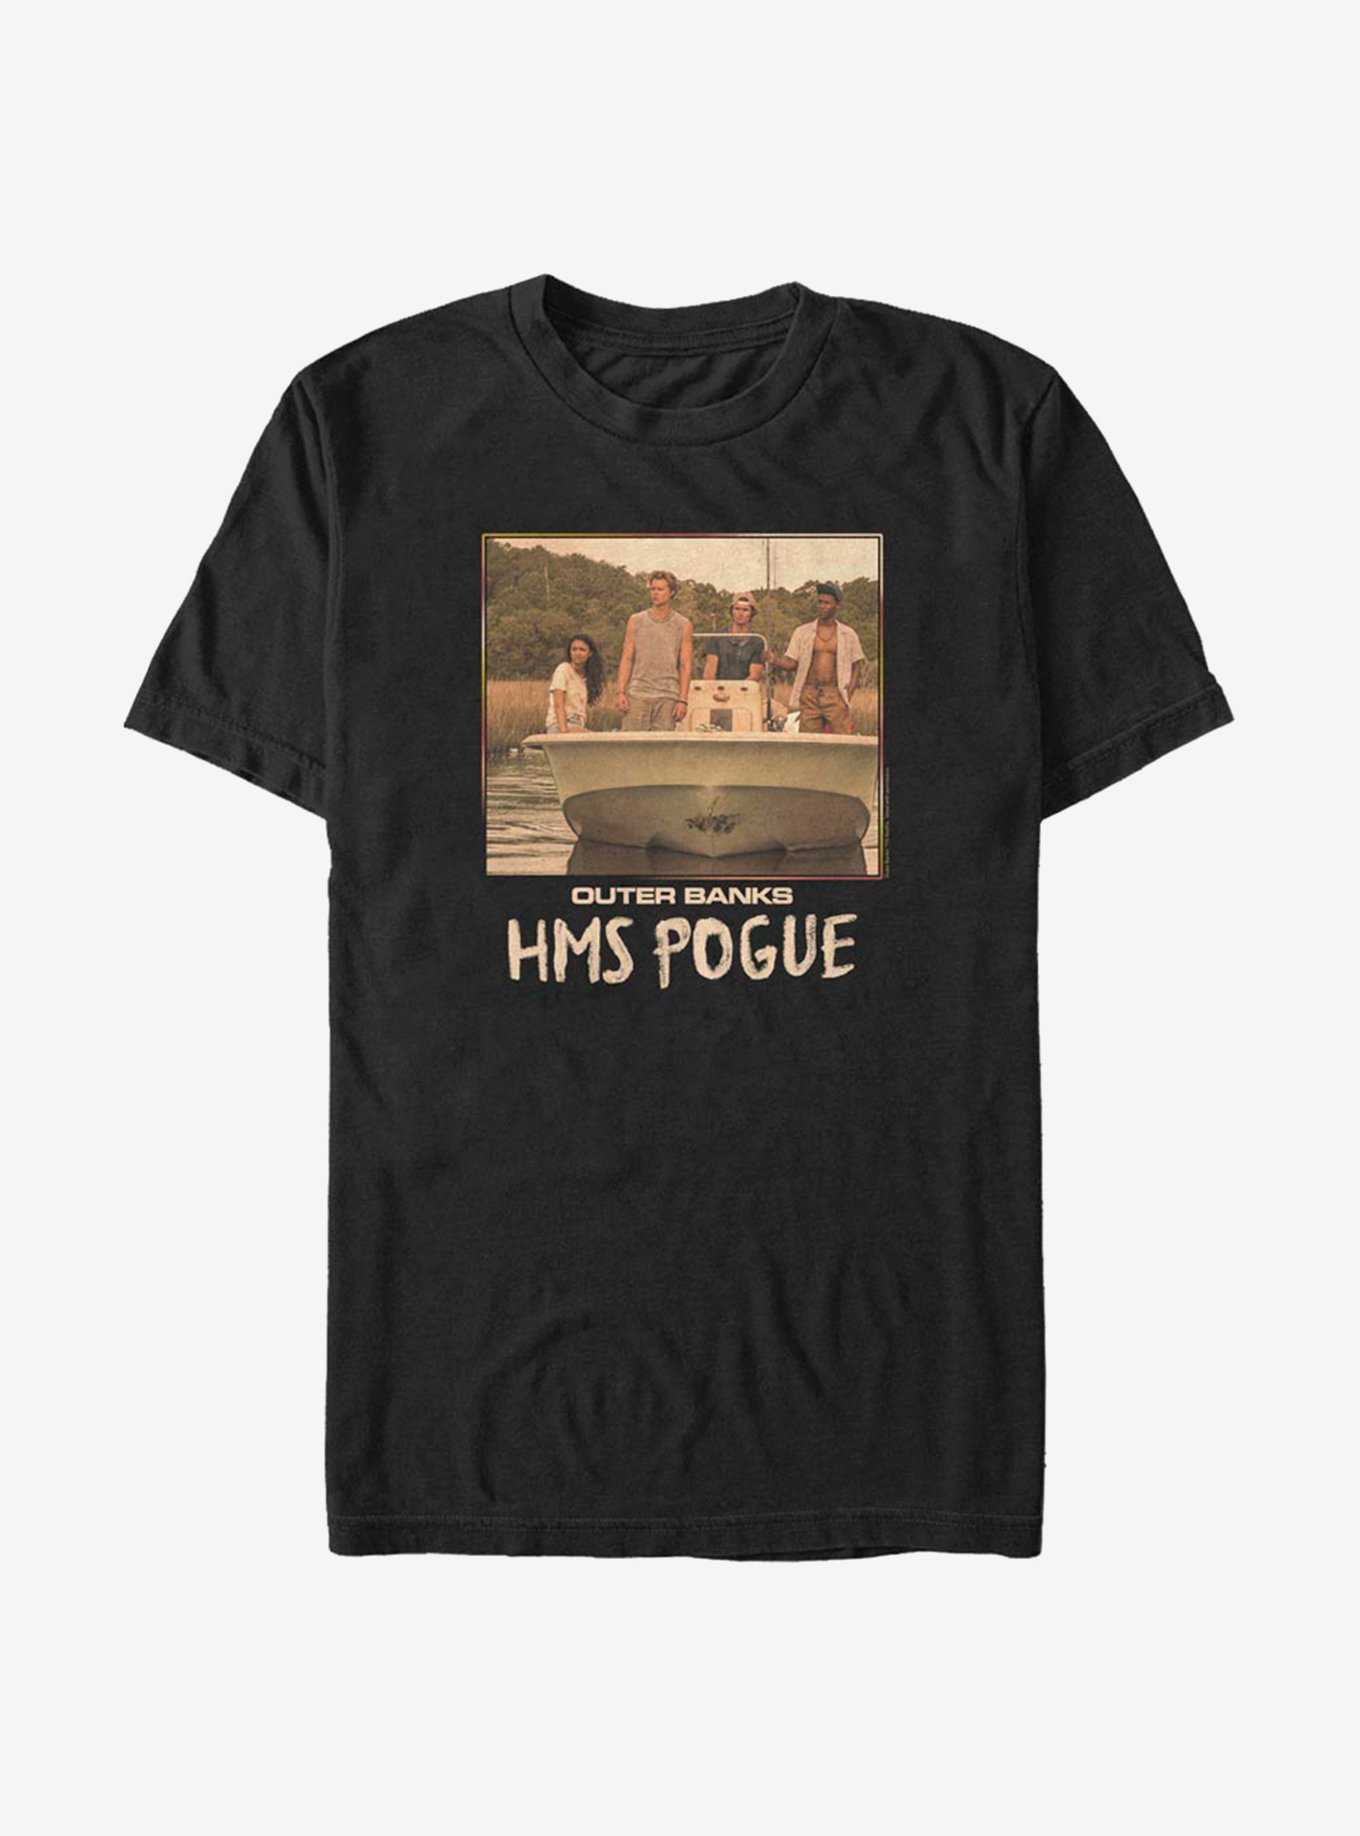 Outer Banks HMS Pogue Square T-Shirt, , hi-res